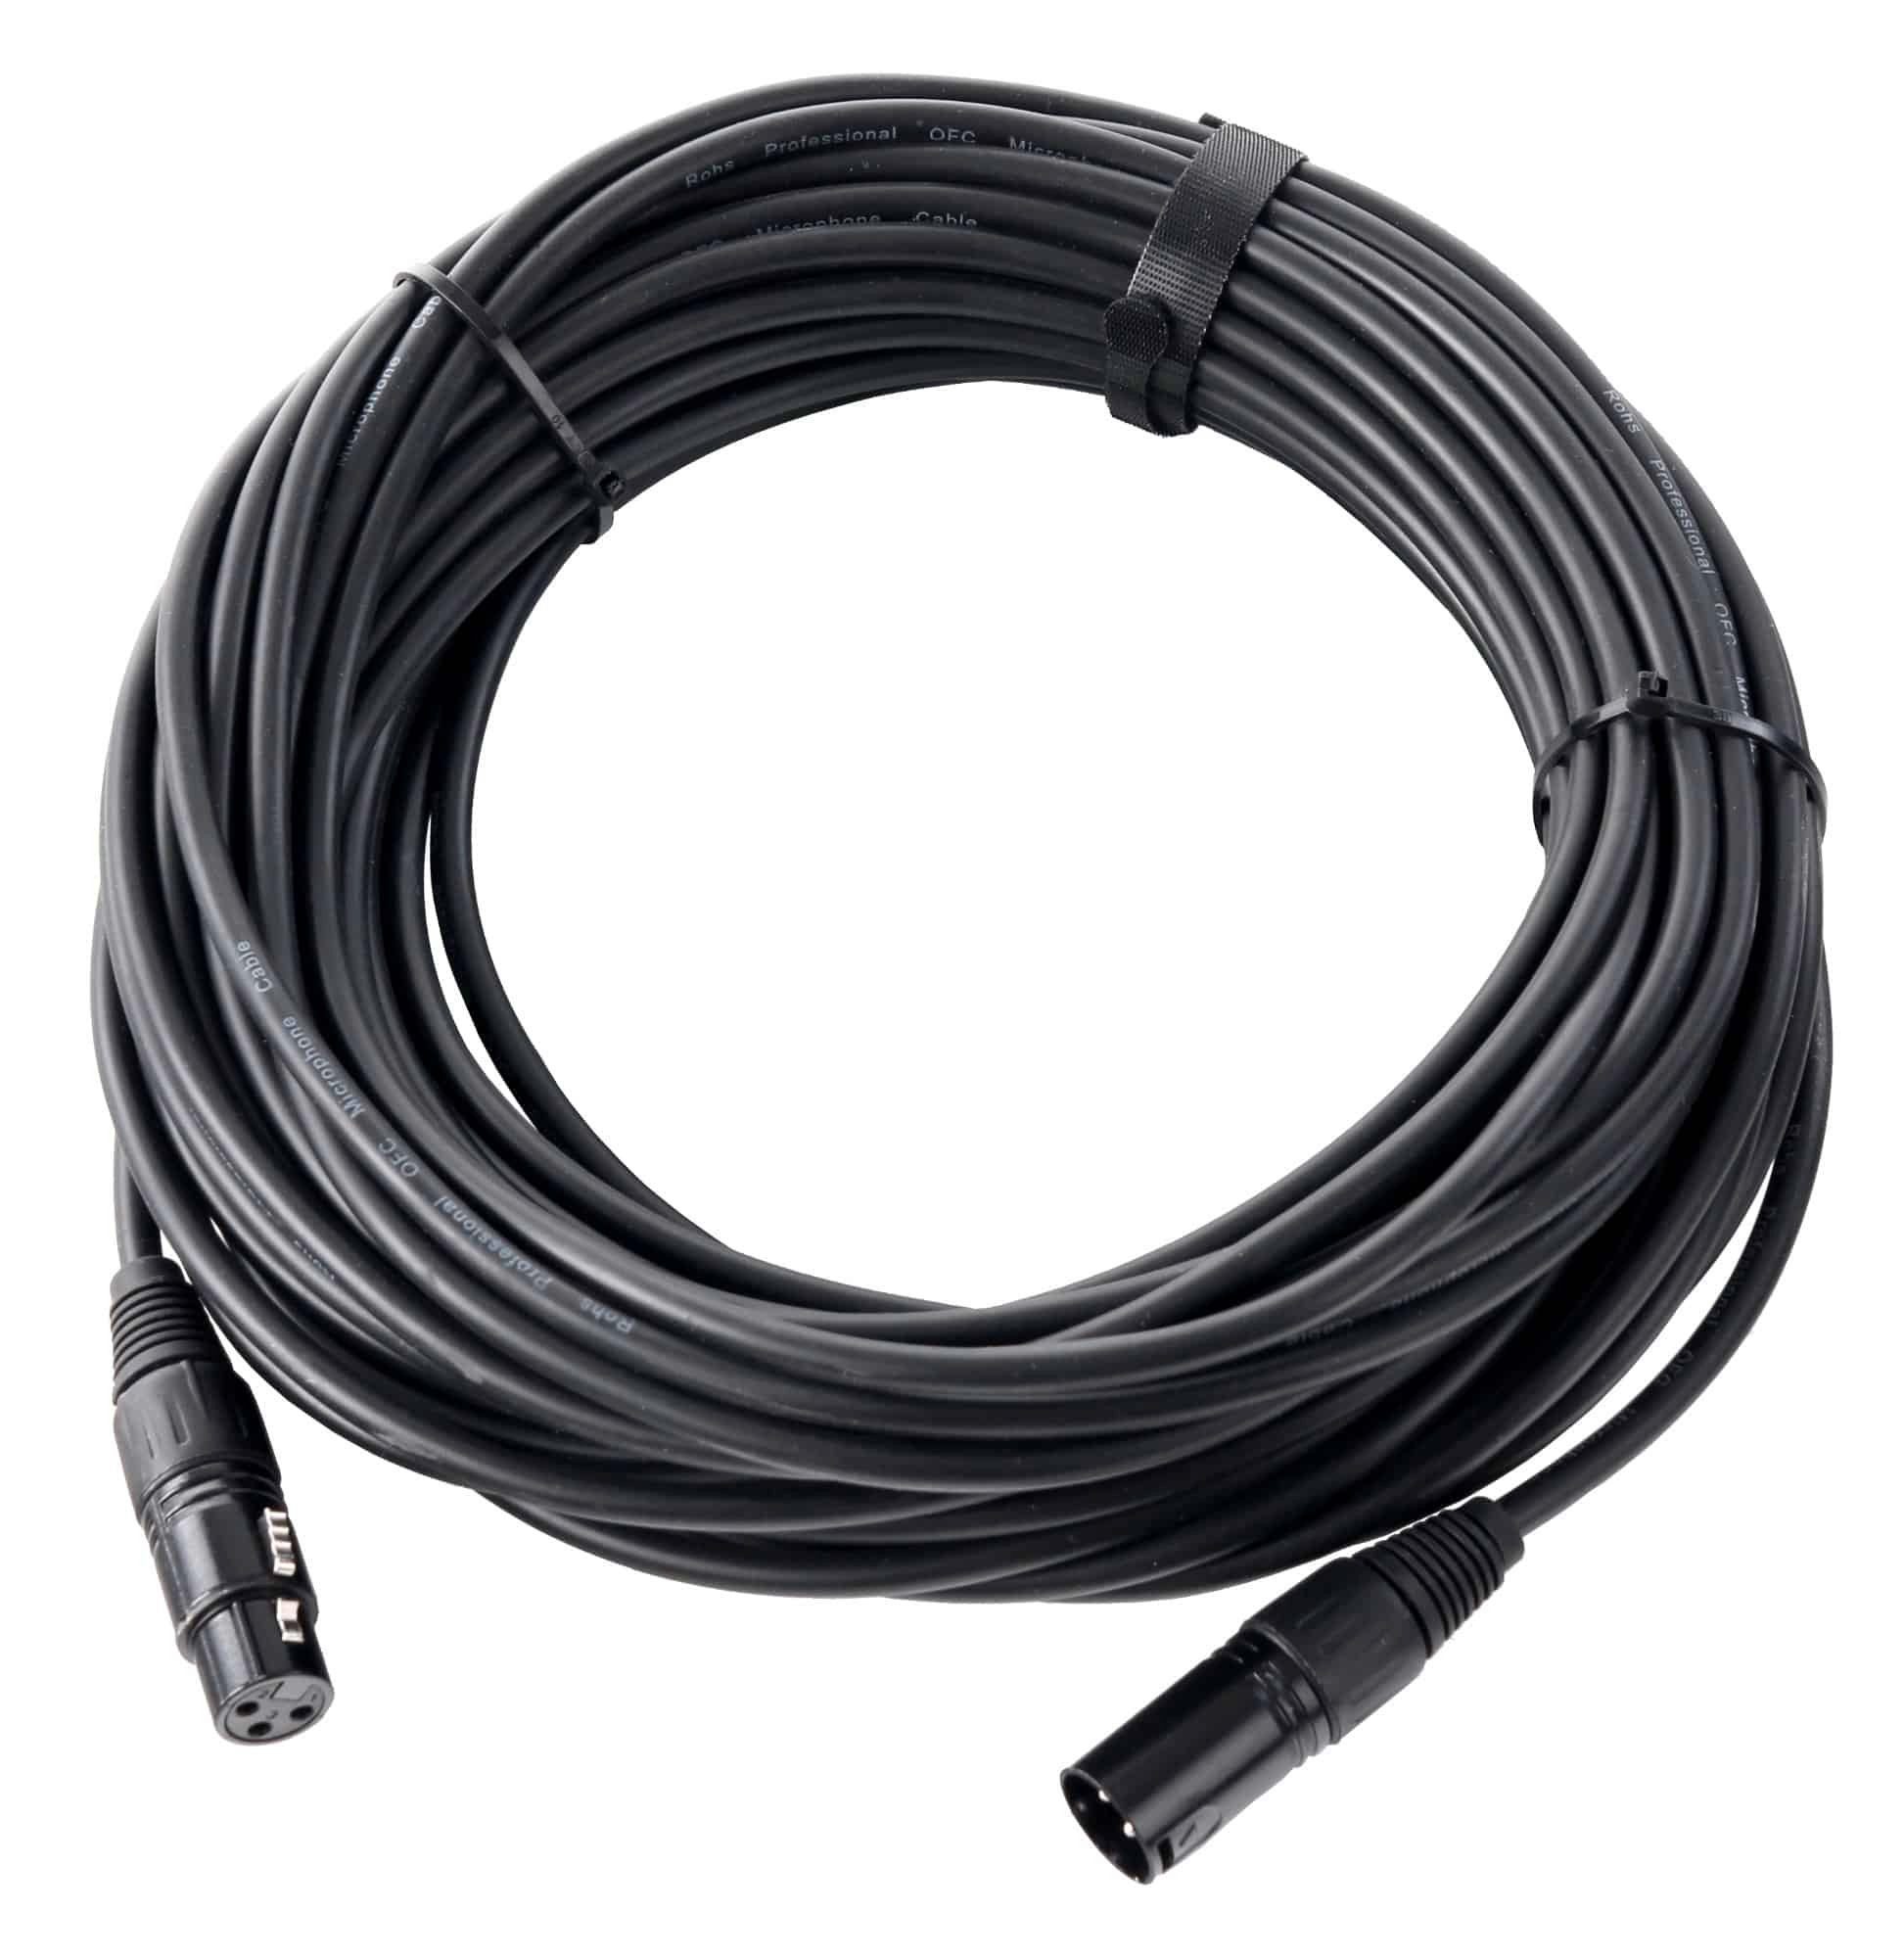 Pronomic XFXM-20 Mikrofonkabel 20 m Audio-Kabel, XLR Female 3-pol, XLR Male 3-pol (2000 cm), Stecker handgelötet, säure- und ölfest